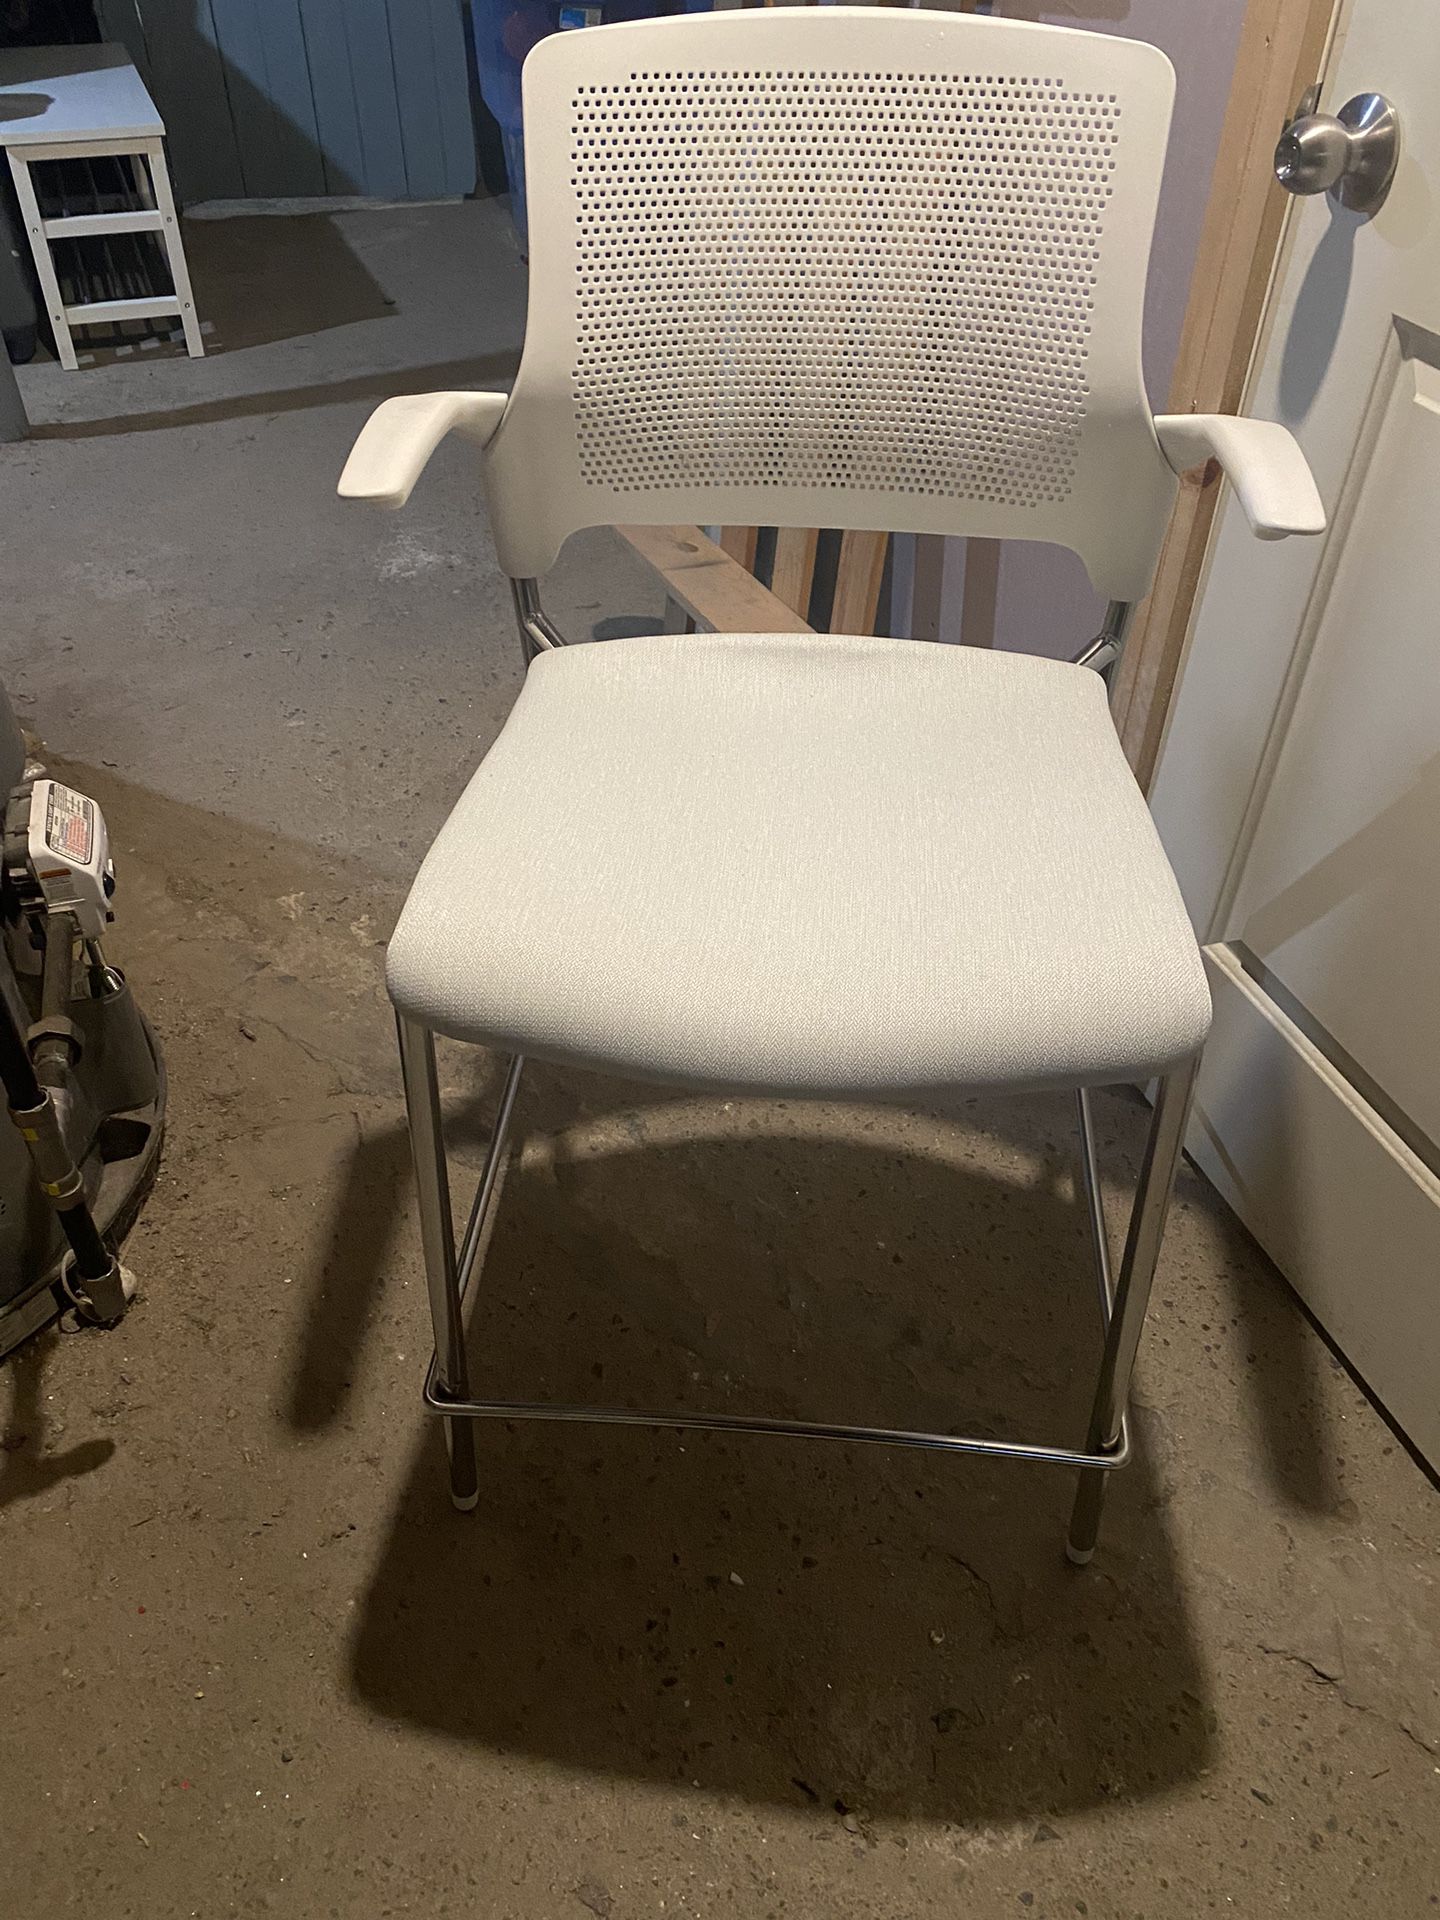 Chairs News $300